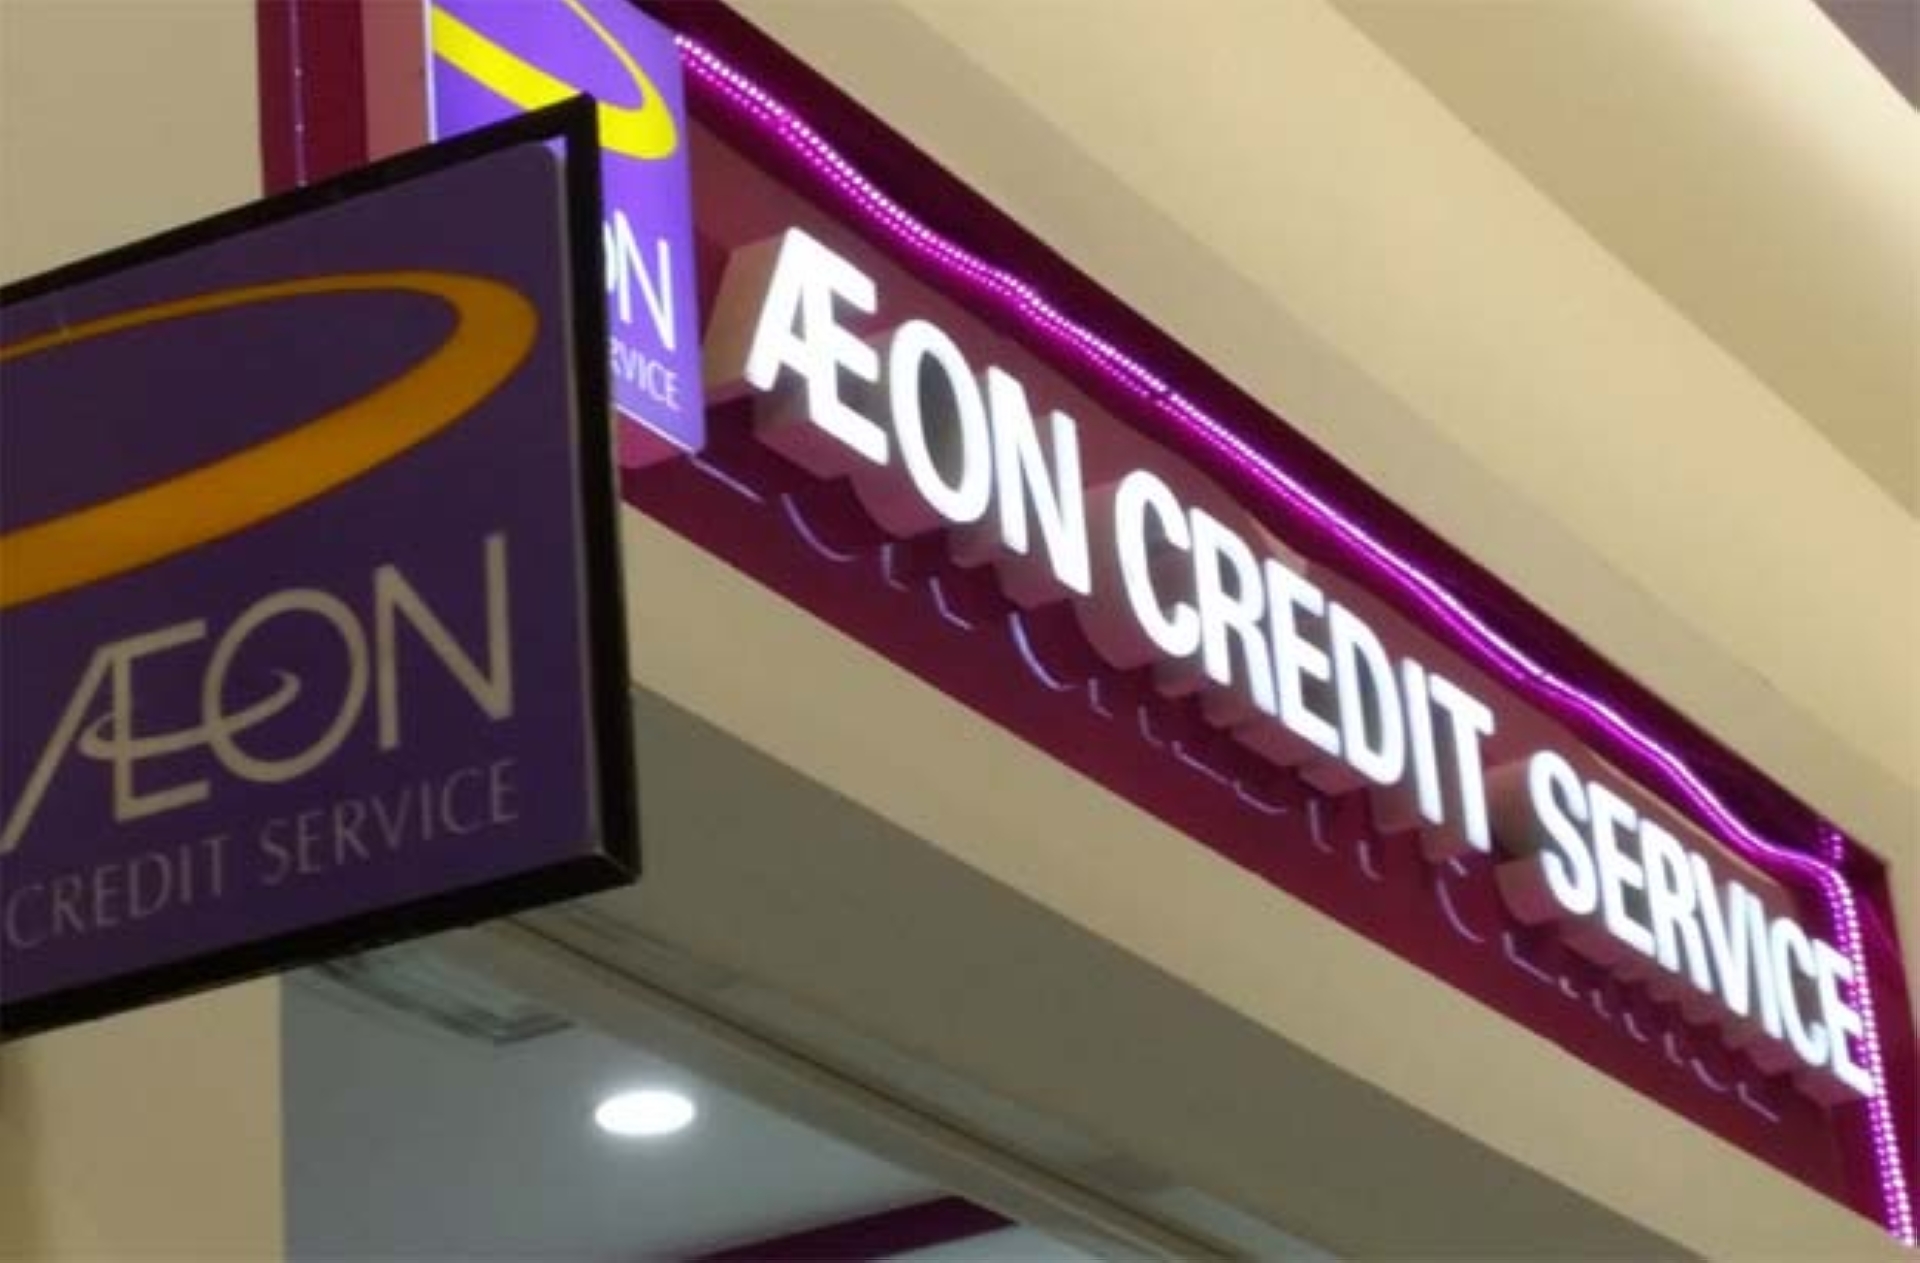 Aeon credit card customer service